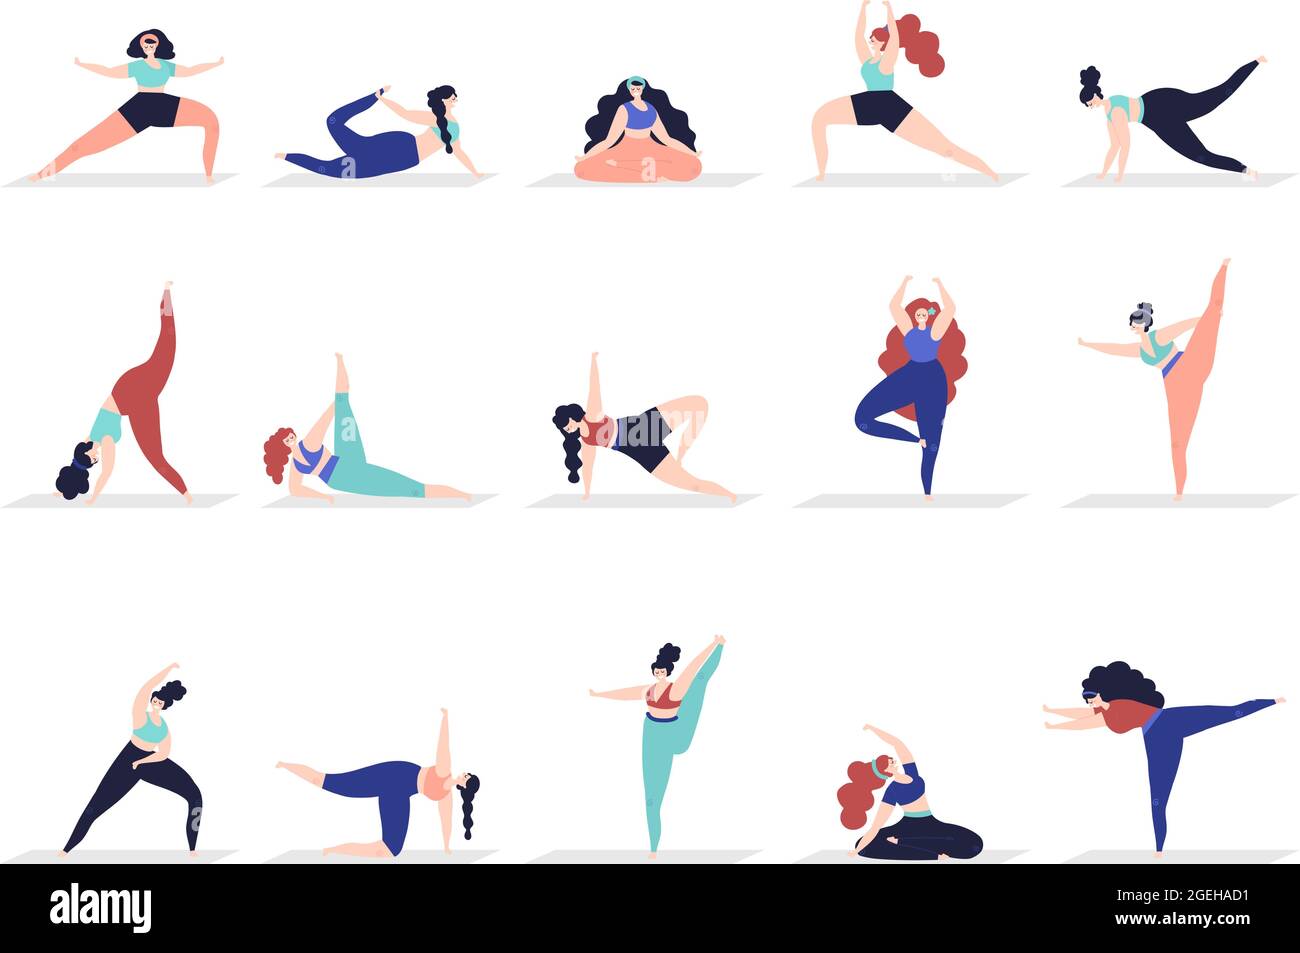 Yoga-Figuren. Menschen üben, Erwachsene Frau Demonstration Stretching  Posen. Weibliche Asana meditierende, aktive anständige Mädchen  Workout-Vektor-Set Stock-Vektorgrafik - Alamy